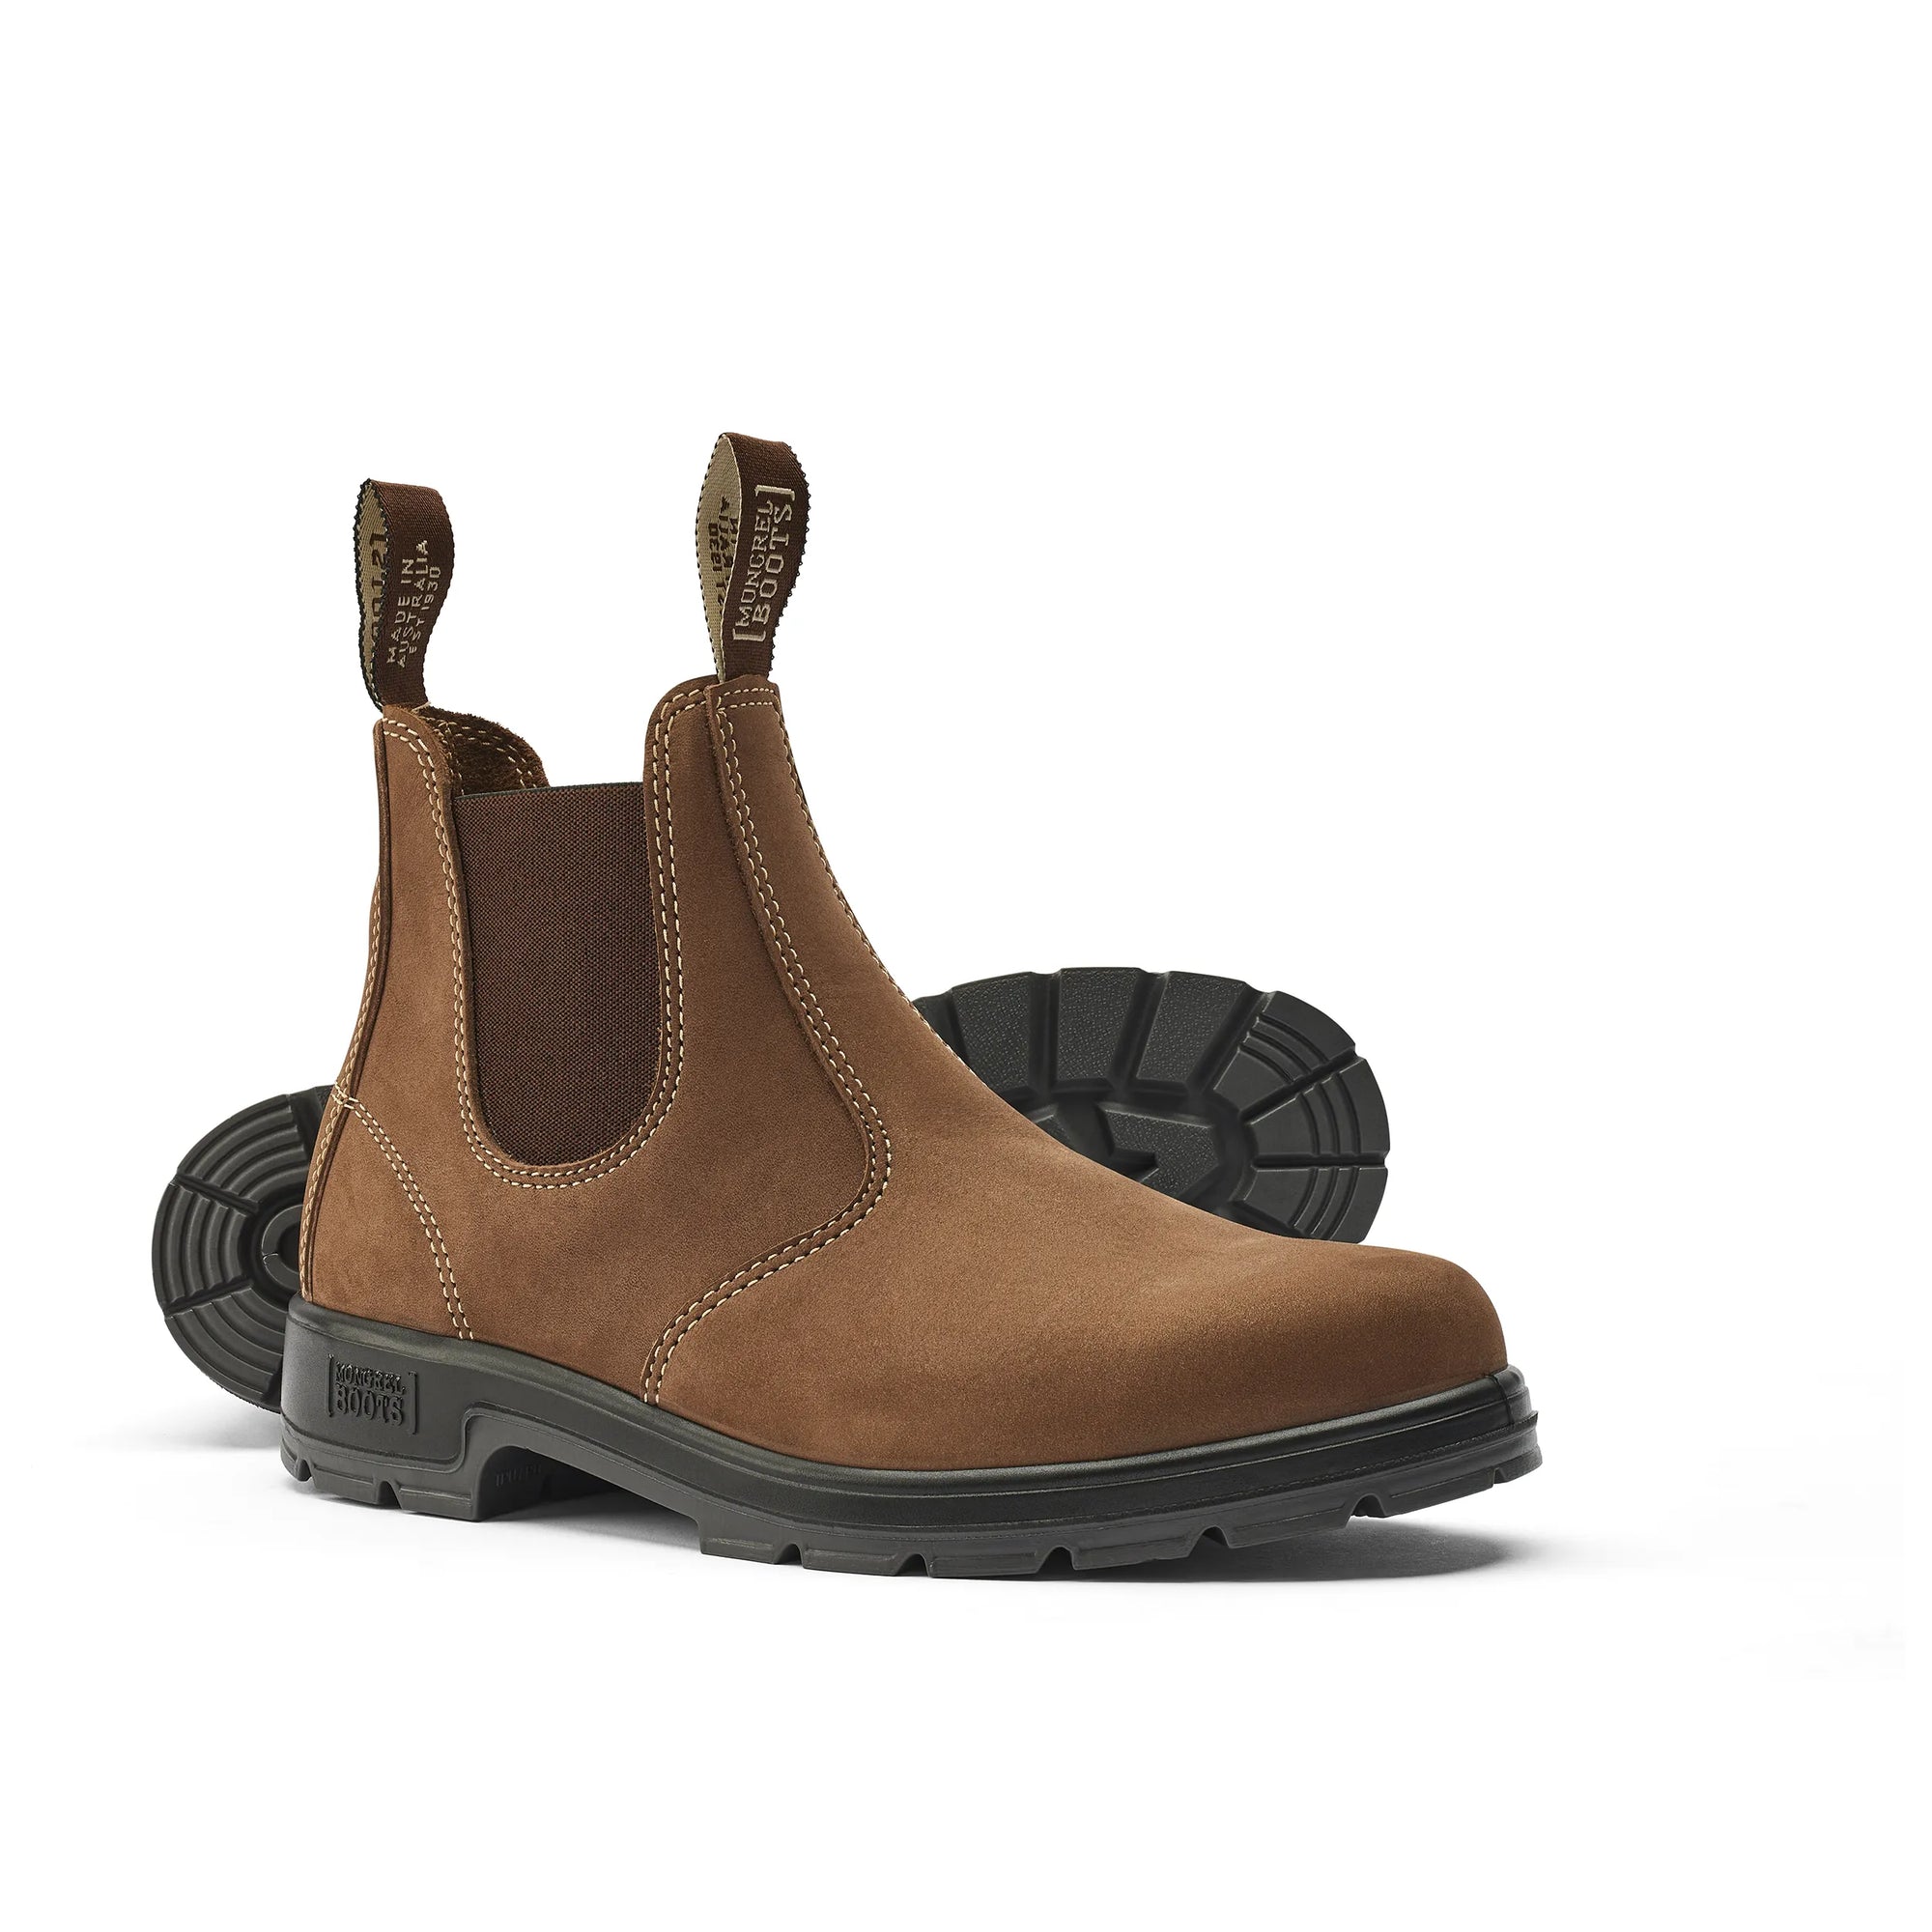 K9 Elastic sided boot - Vintage Brown